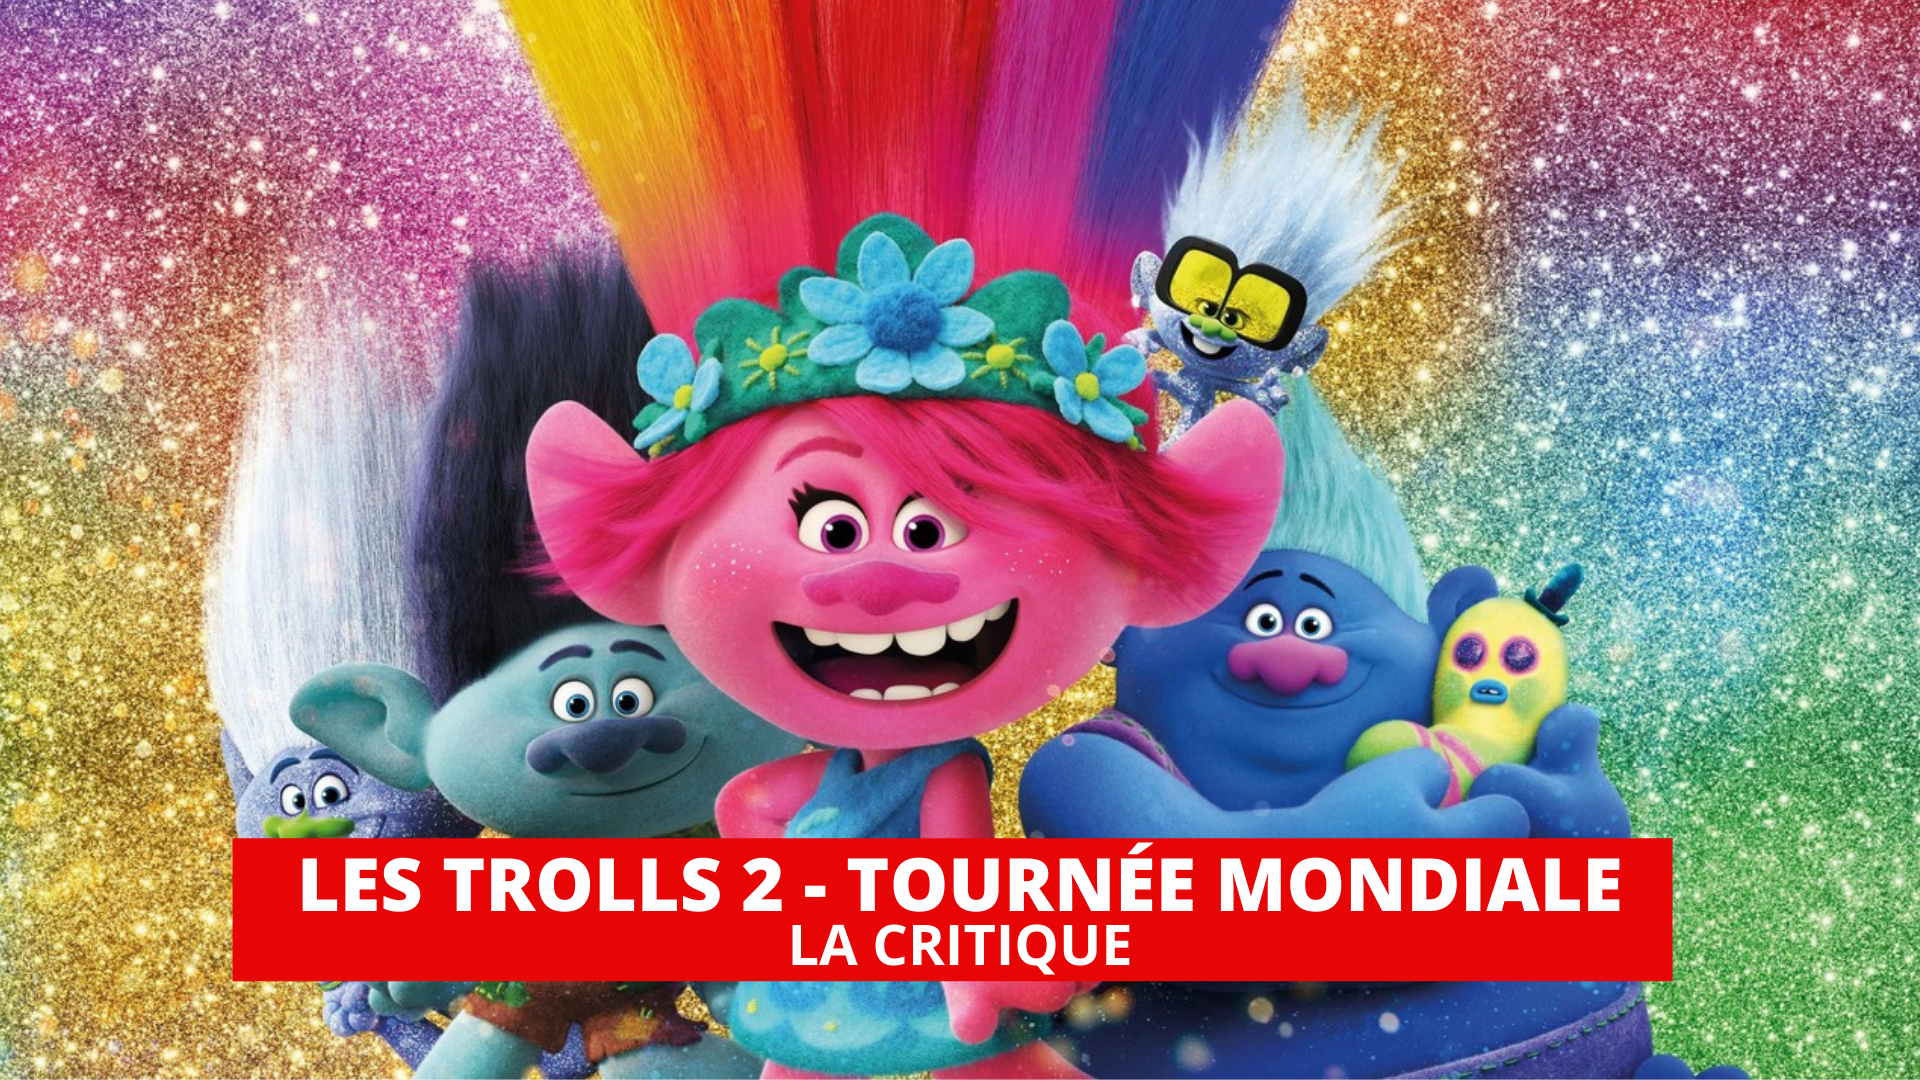 Les Trolls 2 - Tournée Mondiale : un retour très coloré